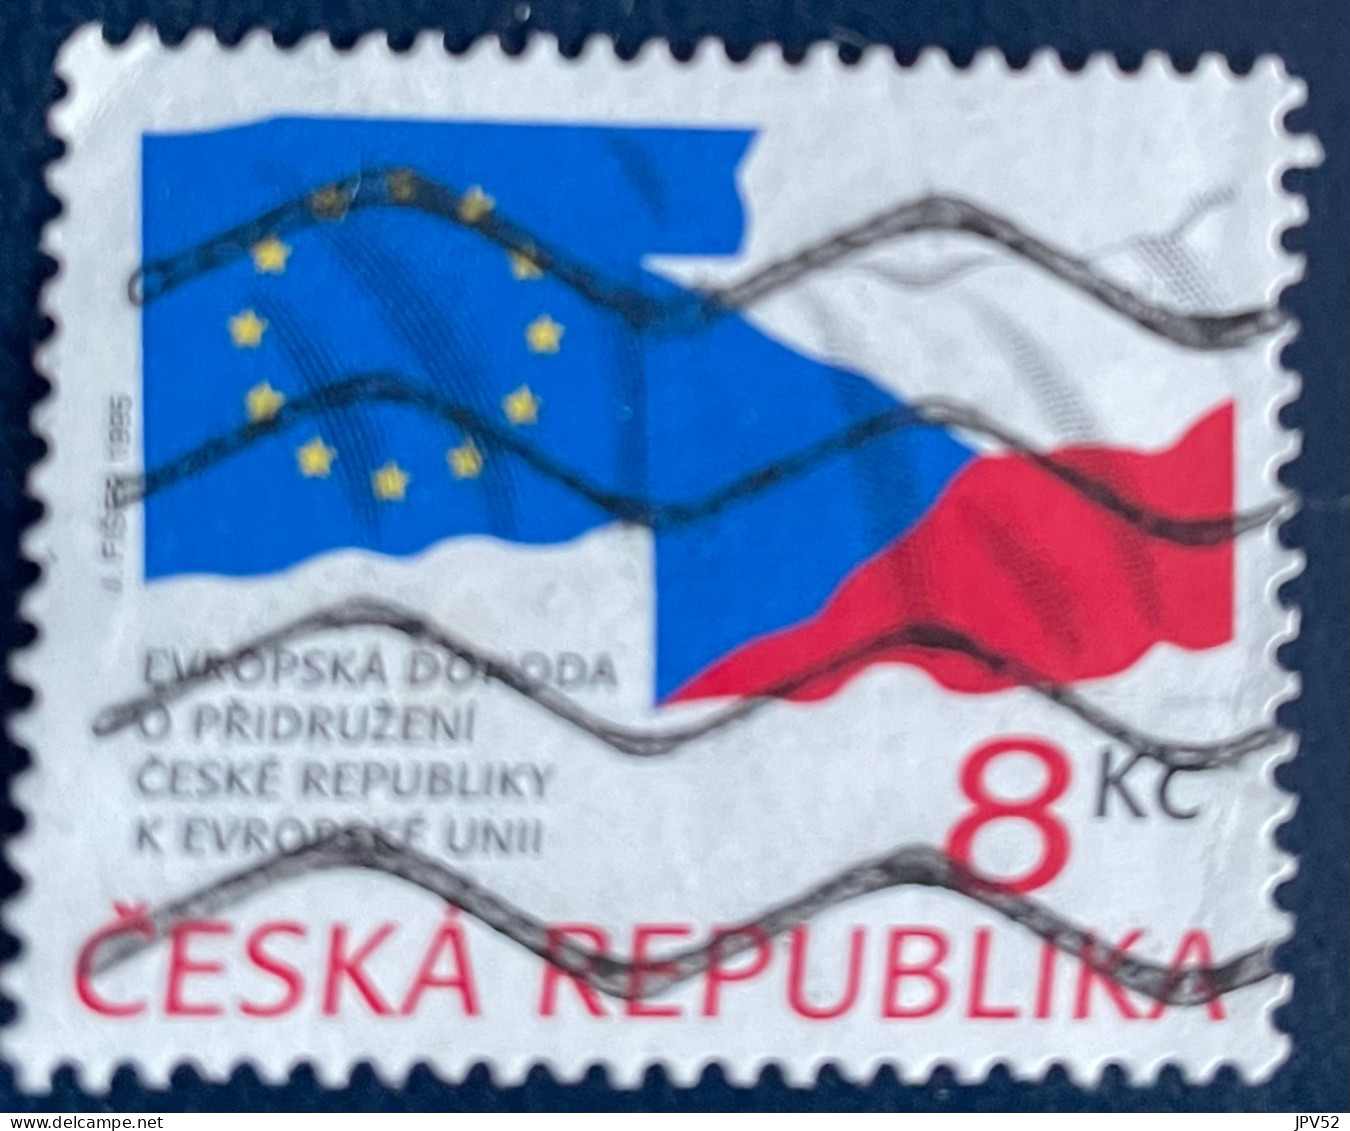 Ceska Republika - Tsjechië - C4/4 - 1995 - (°)used - Michel 62 - Tsjechië Lid Va EU - Used Stamps